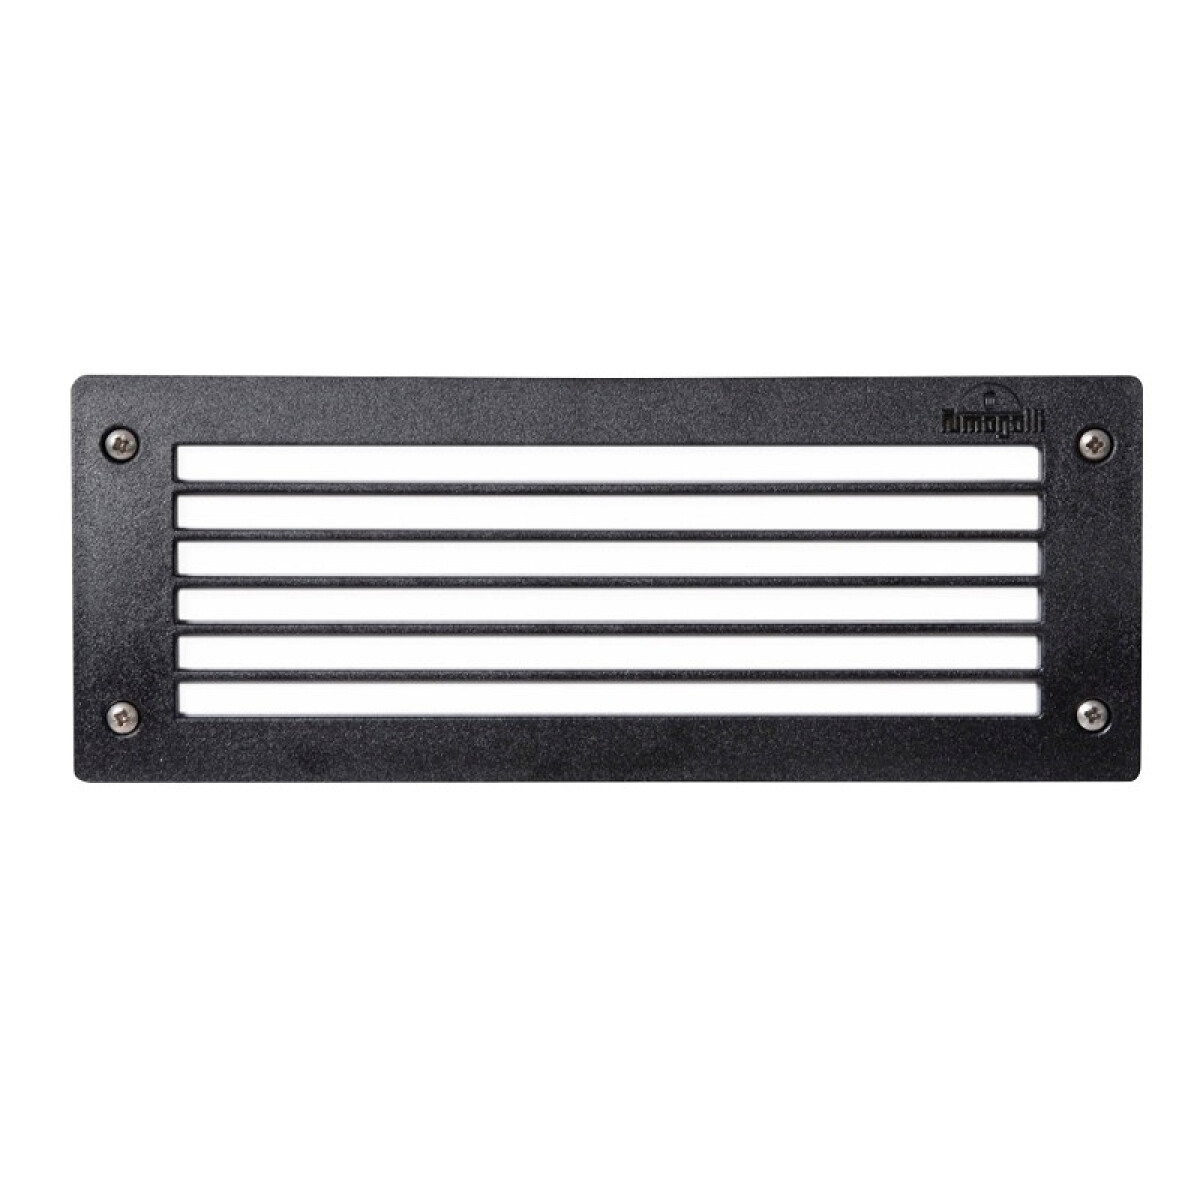 Luminaria de embutir LED rectangular negra IP66 - FL0346 